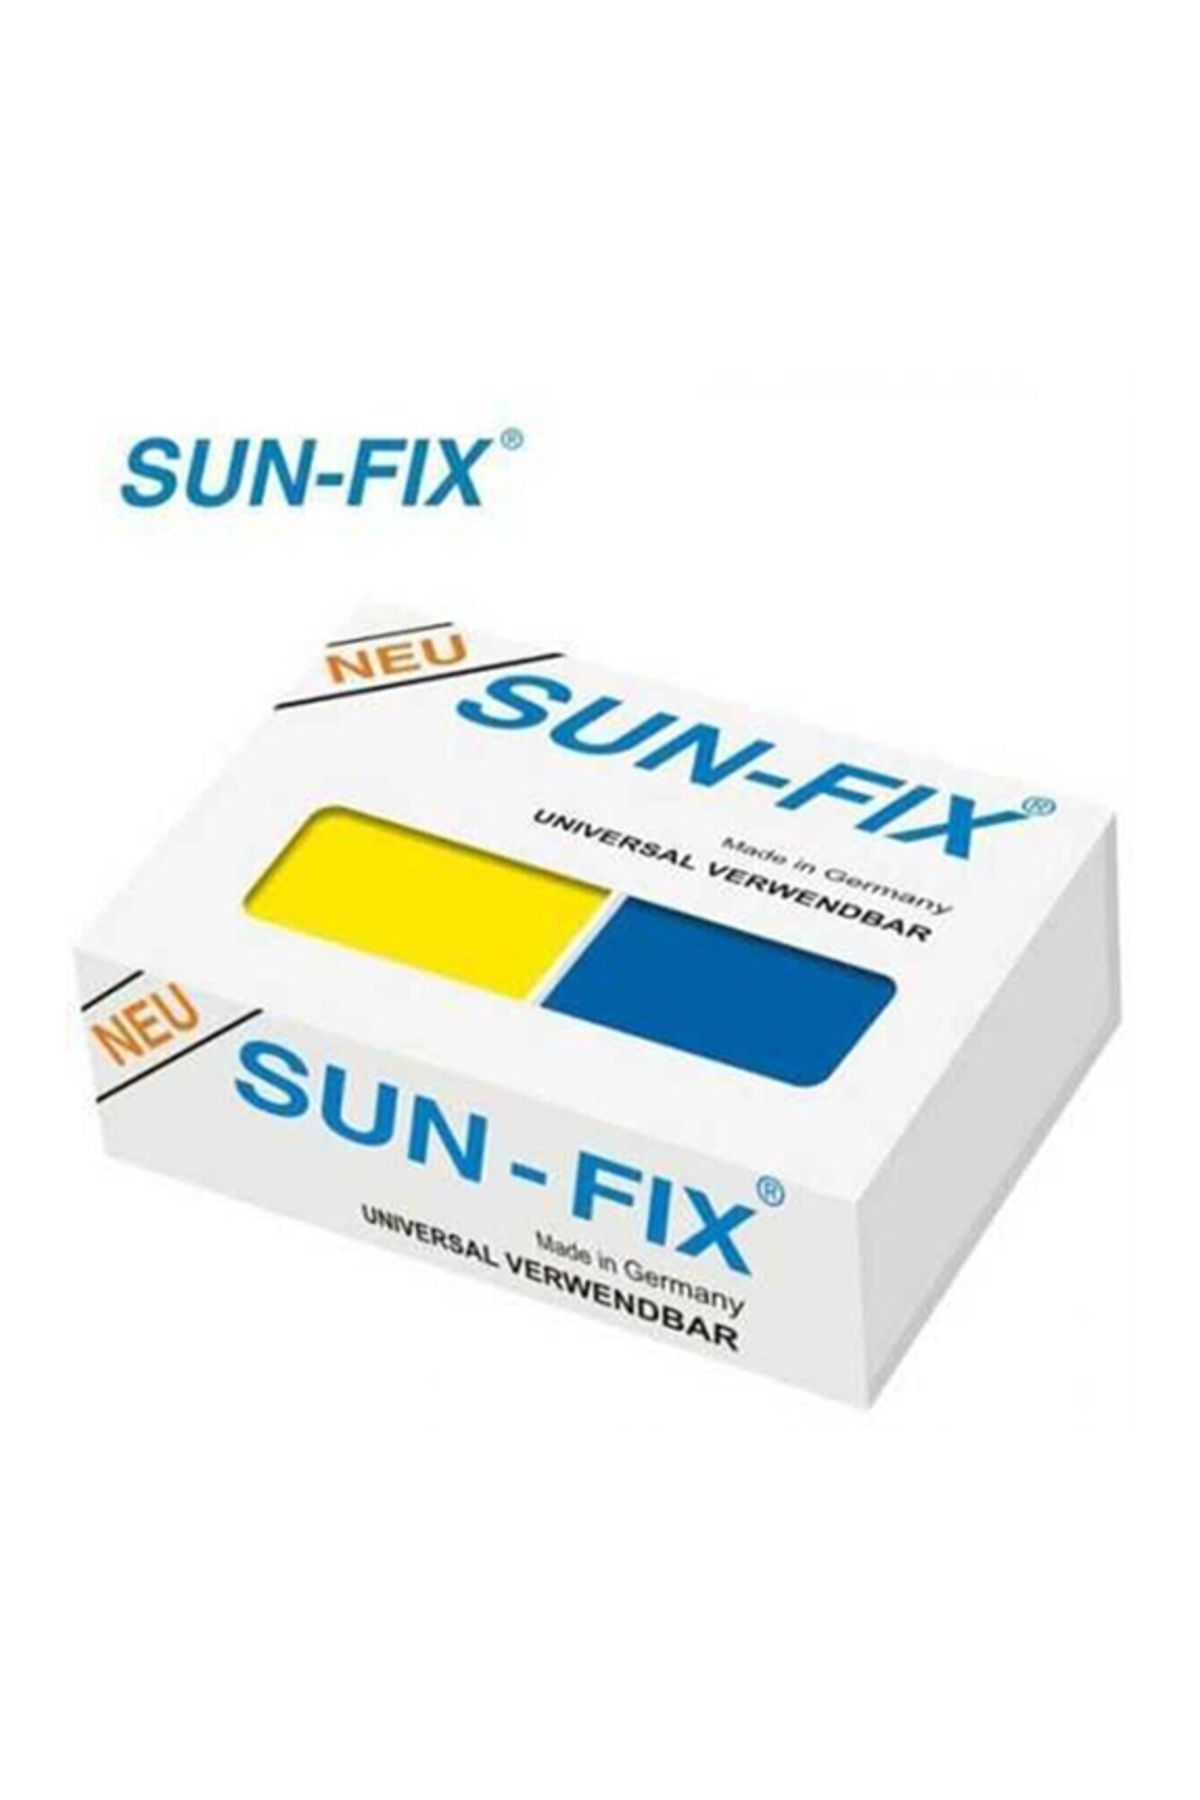 Genel Markalar Sun-fix 100 gr Universal Verwendbar Macun Kaynak Yapıştırıcı